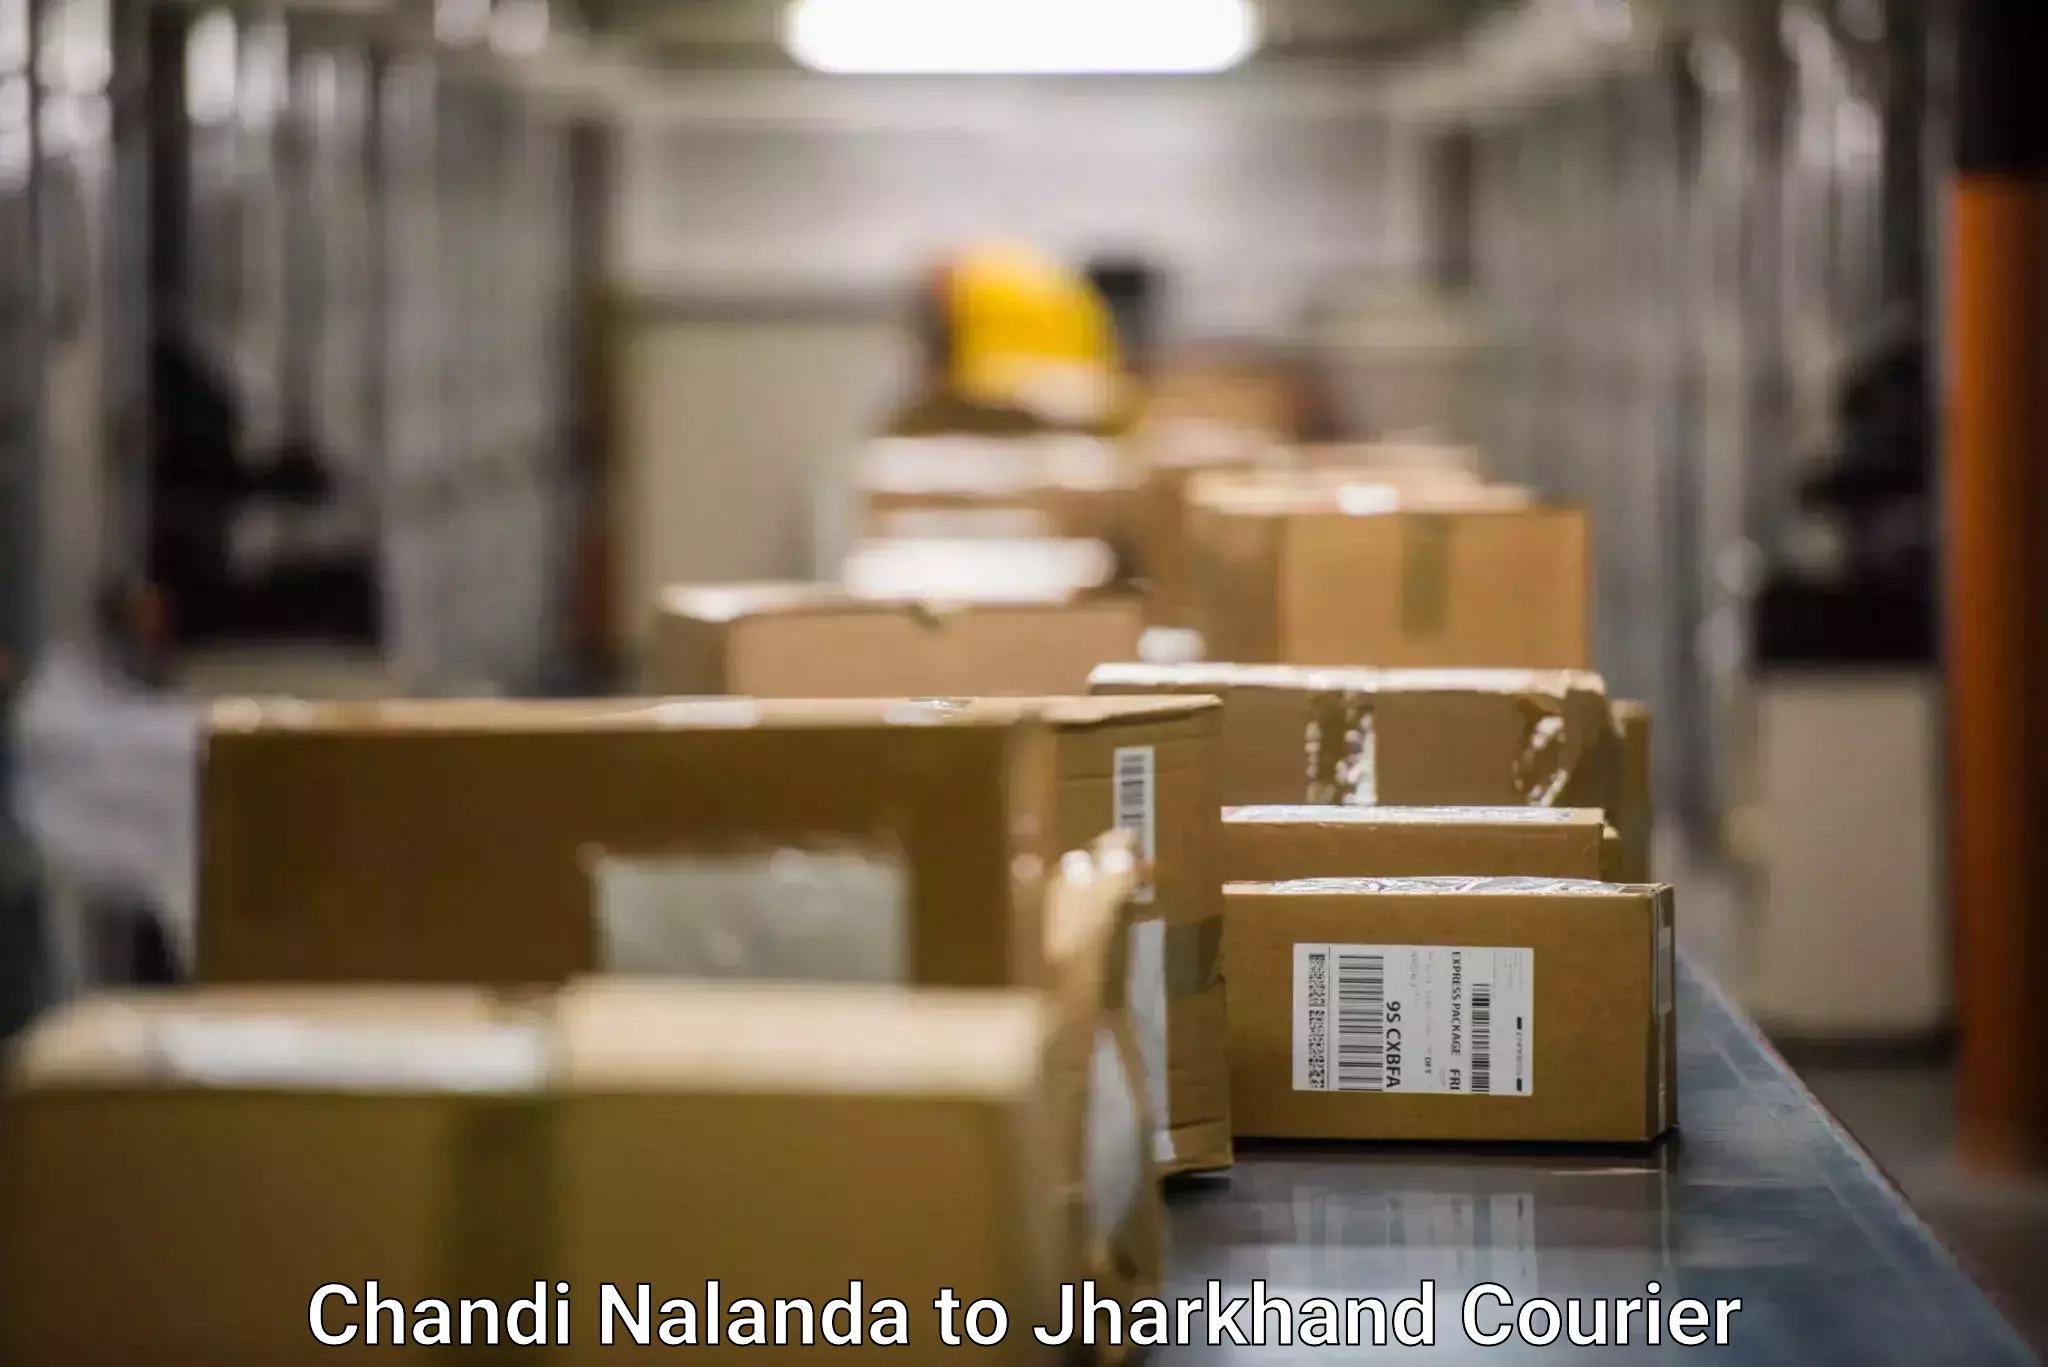 International courier networks Chandi Nalanda to Tandwa